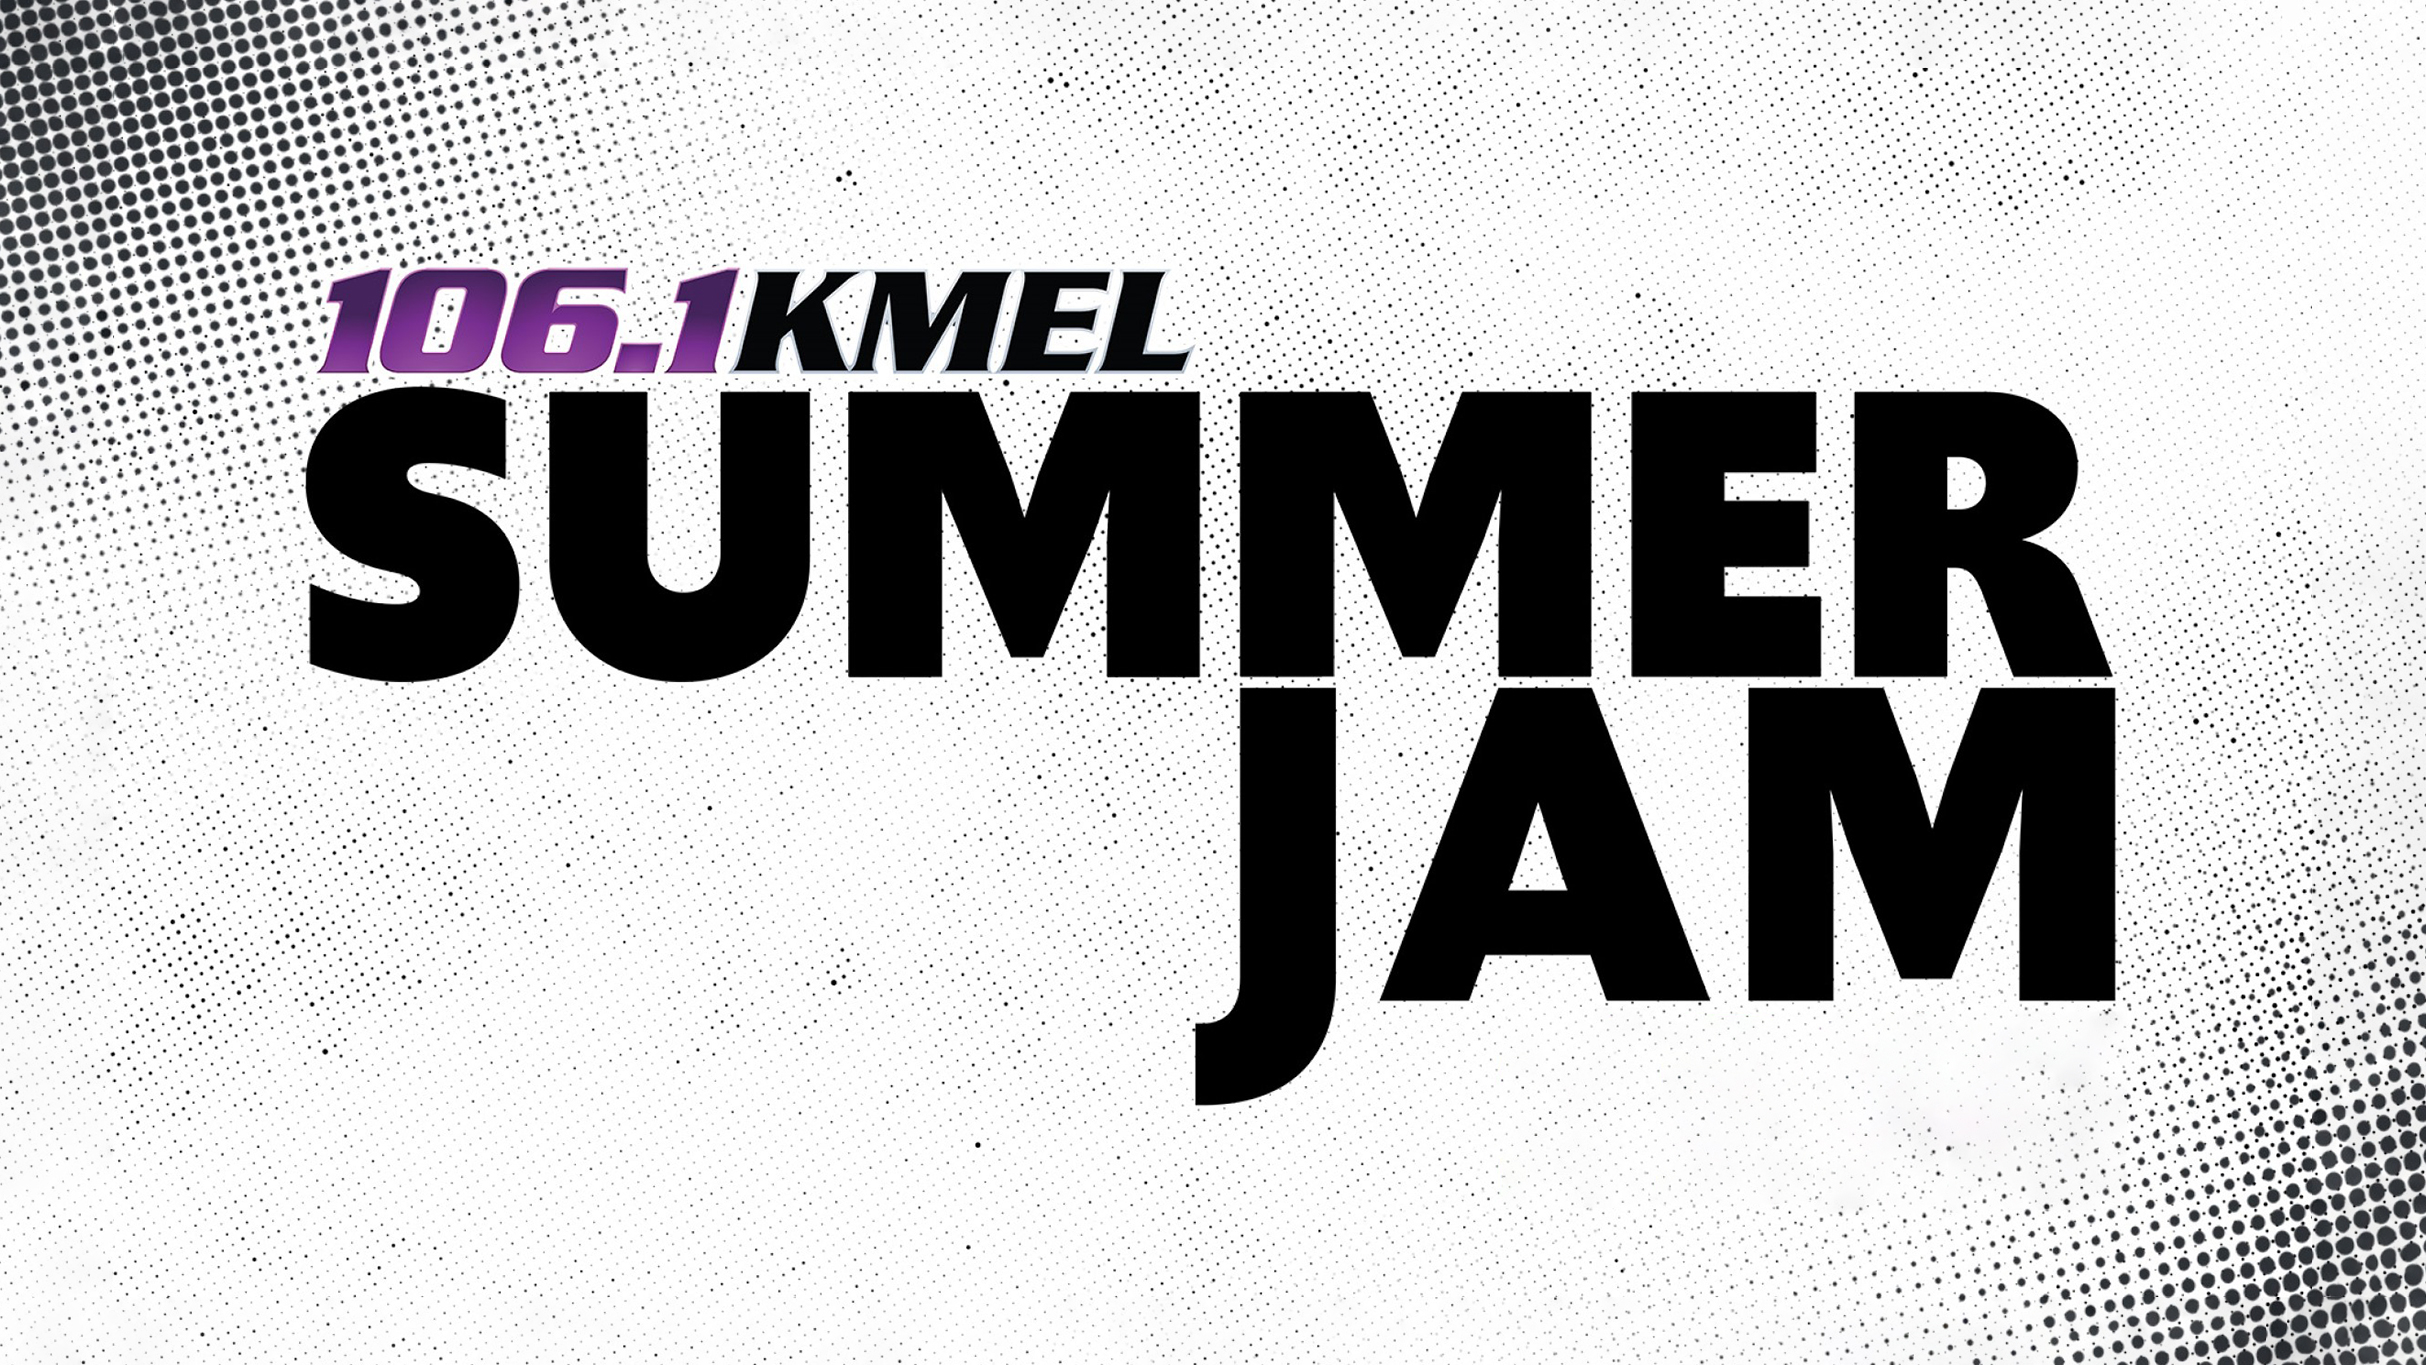 KMEL Summer Jam